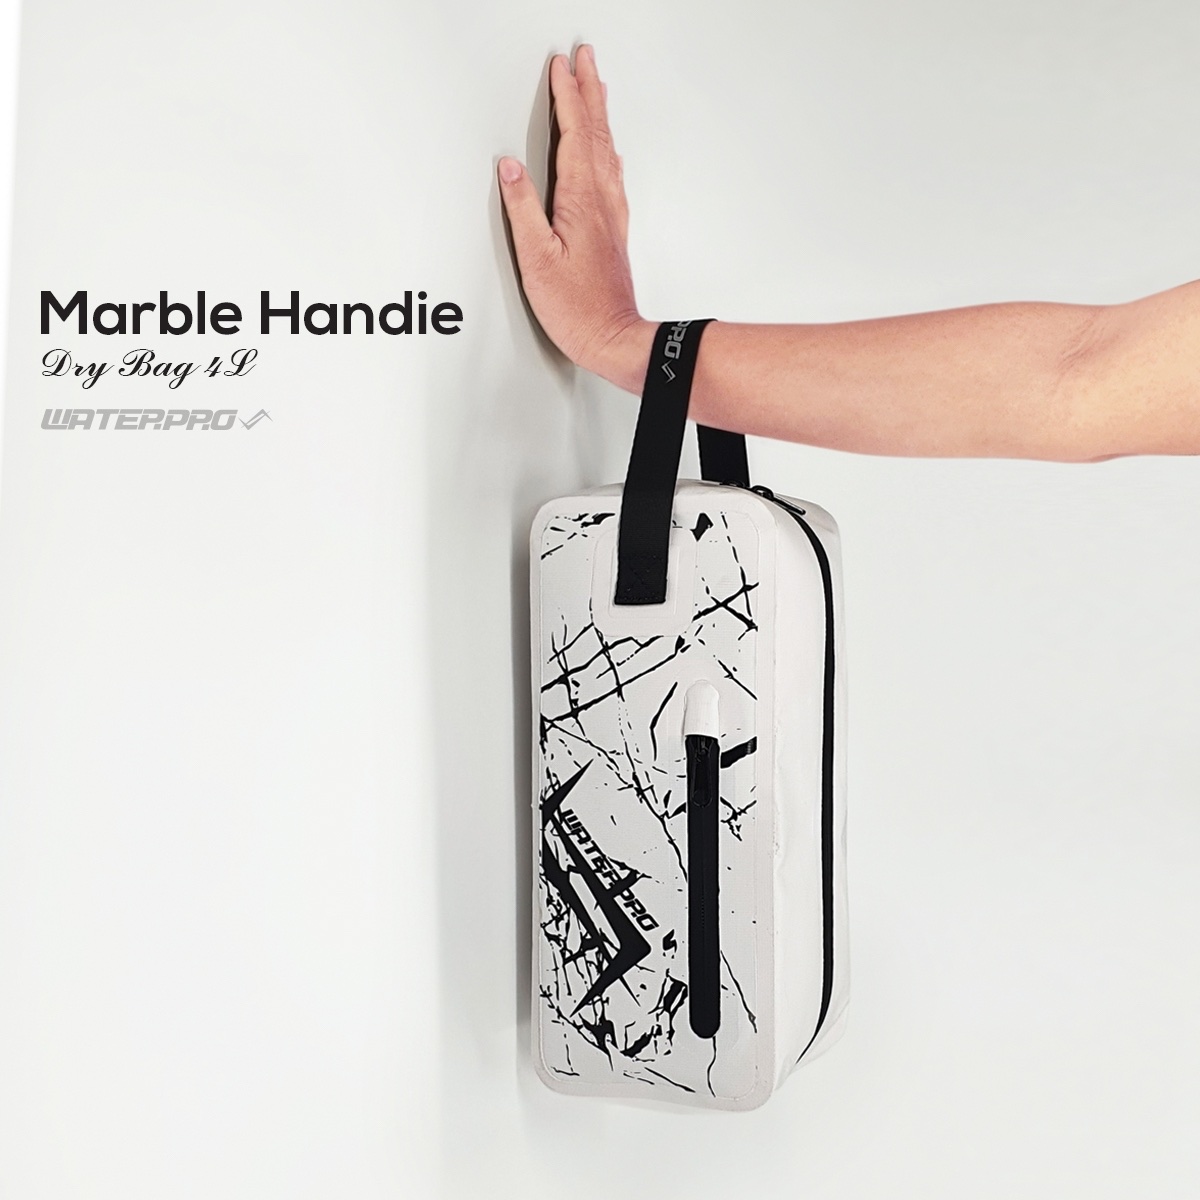 กระเป๋ากันน้ำ ขนาด 4 ลิตร Water Pro - Marble Handie Dry Bag 4L